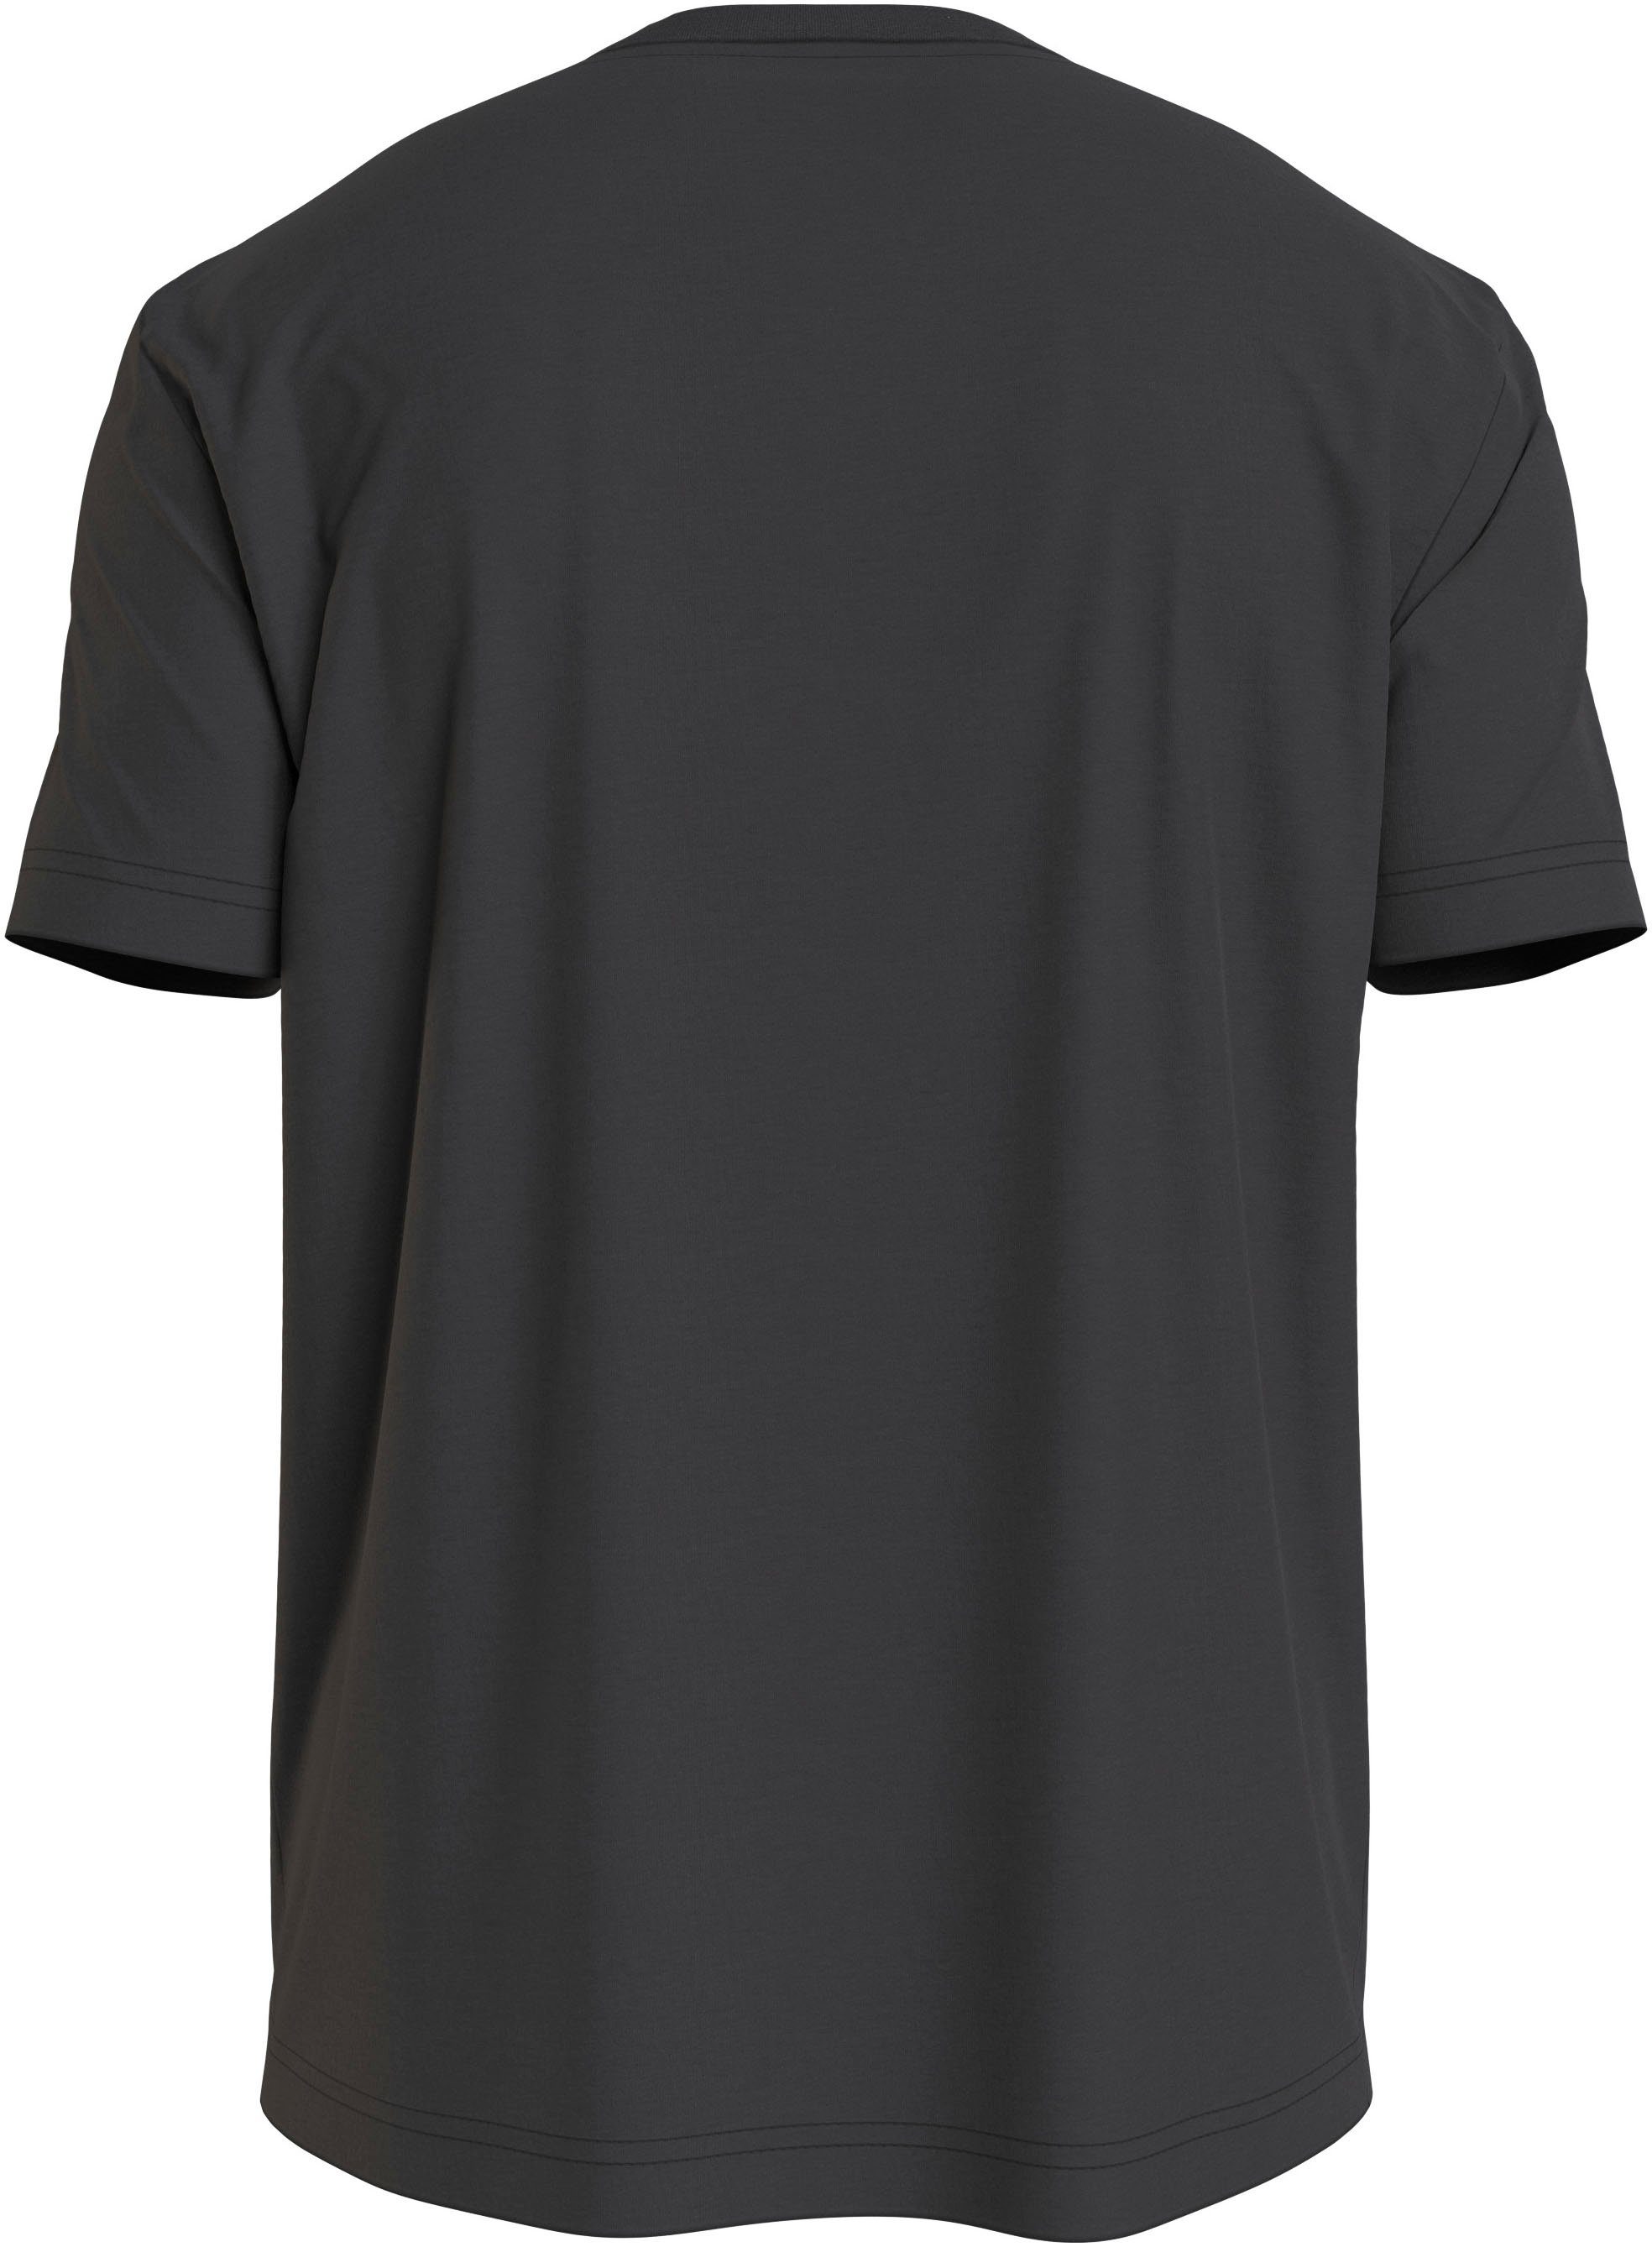 Calvin LINES WAVE LOGO Klein HERO mit T-Shirt Markenlabel T-SHIRT